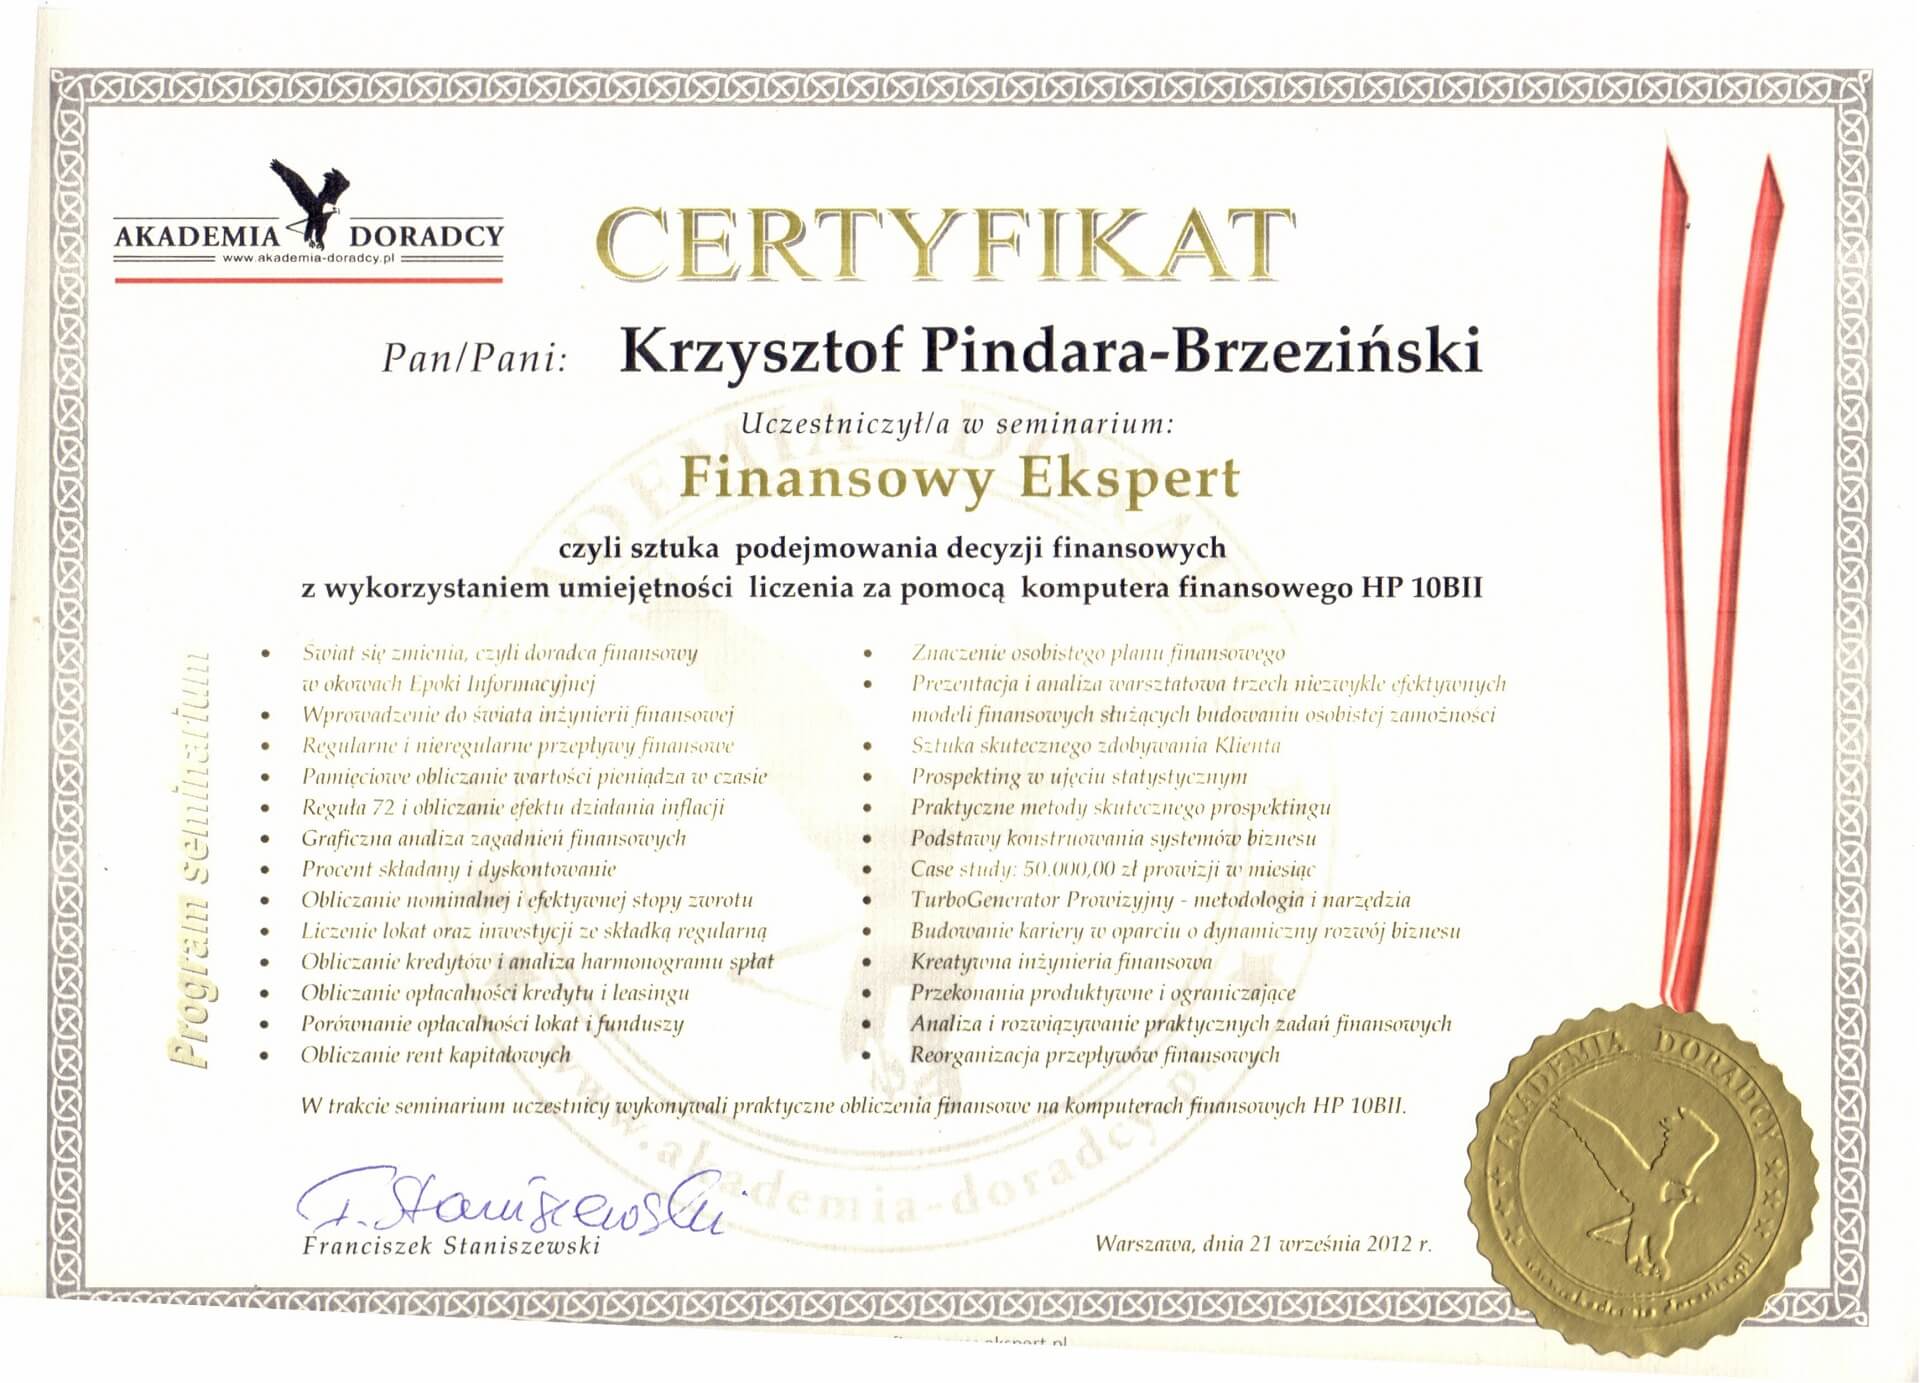 Certyfikat_Krzysztof Pindara Brzeziński (19)